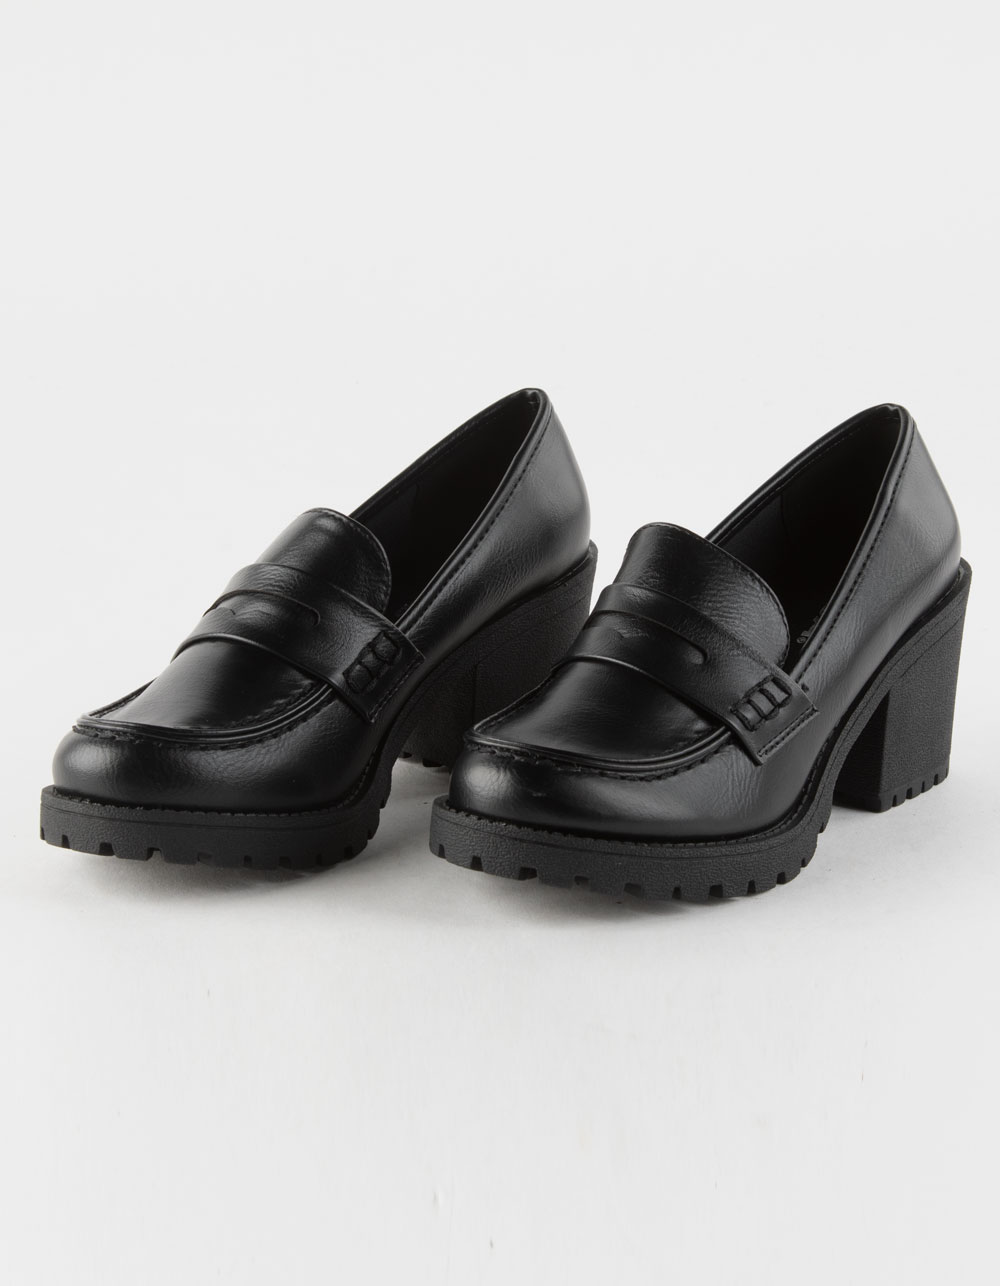 Kinder Platform Penny Shoes - BLACK | Tillys